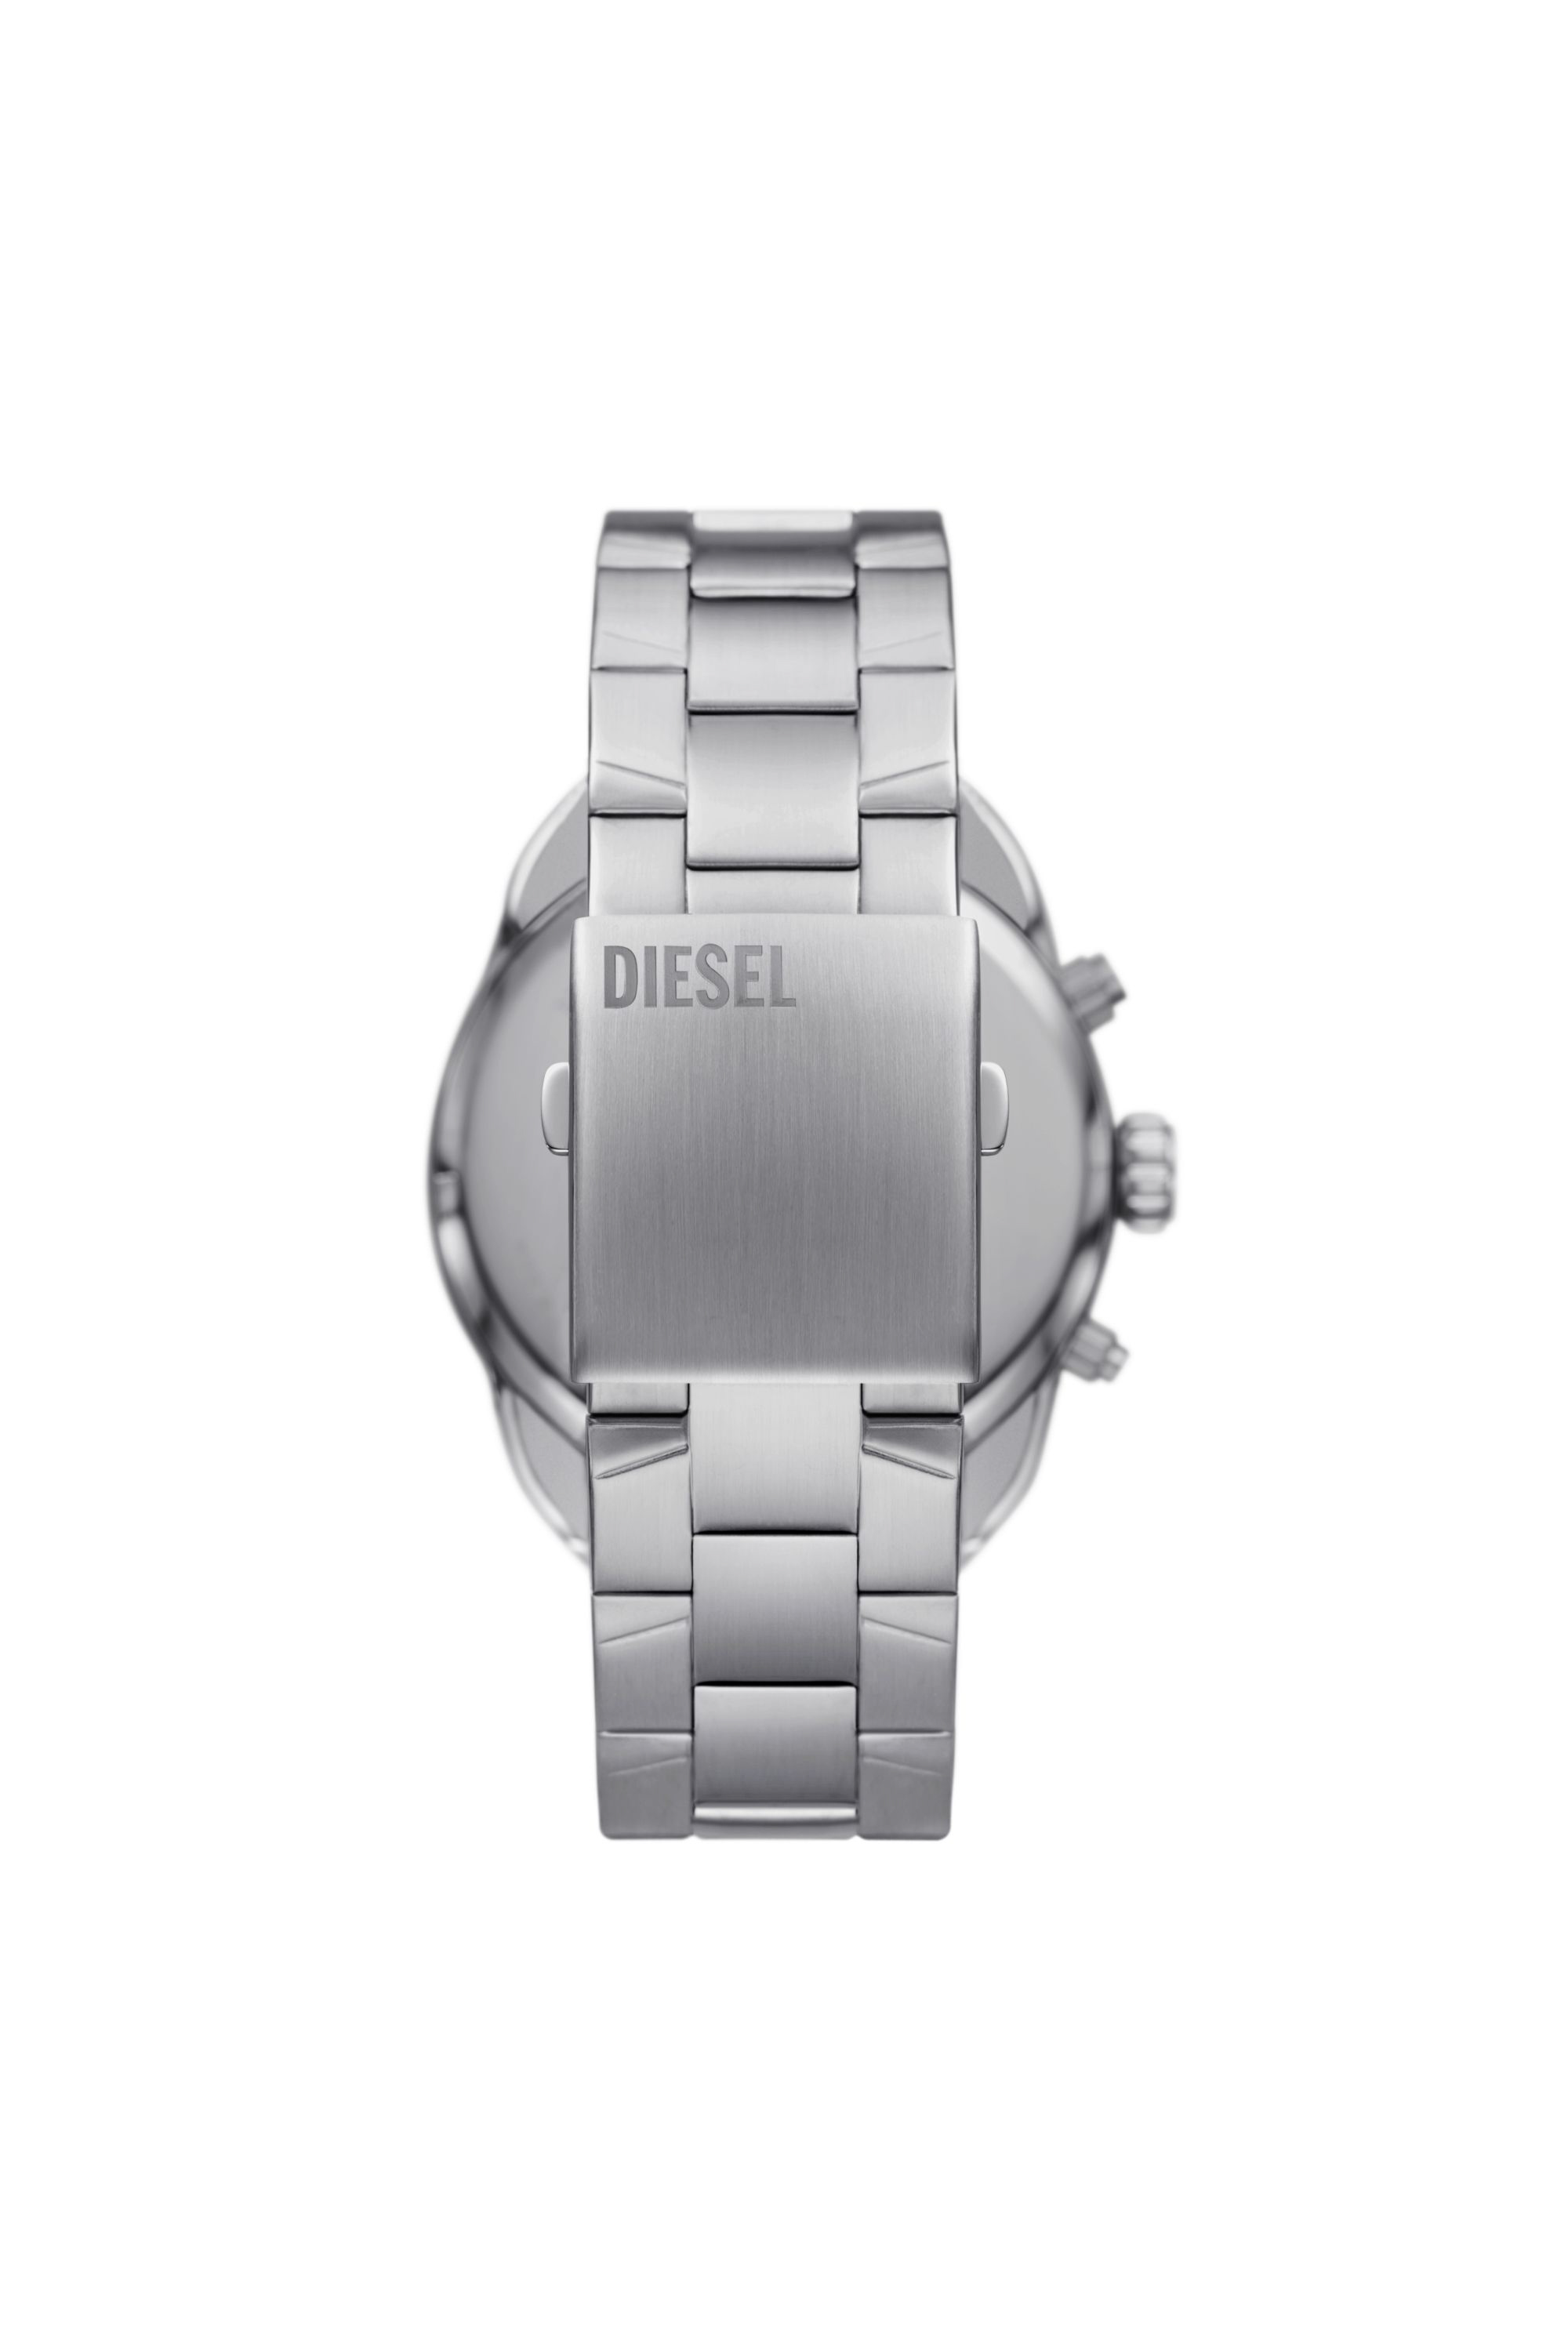 Diesel - DZ4655, Hombre Reloj Spiked de acero inoxidable in Plateado - Image 2